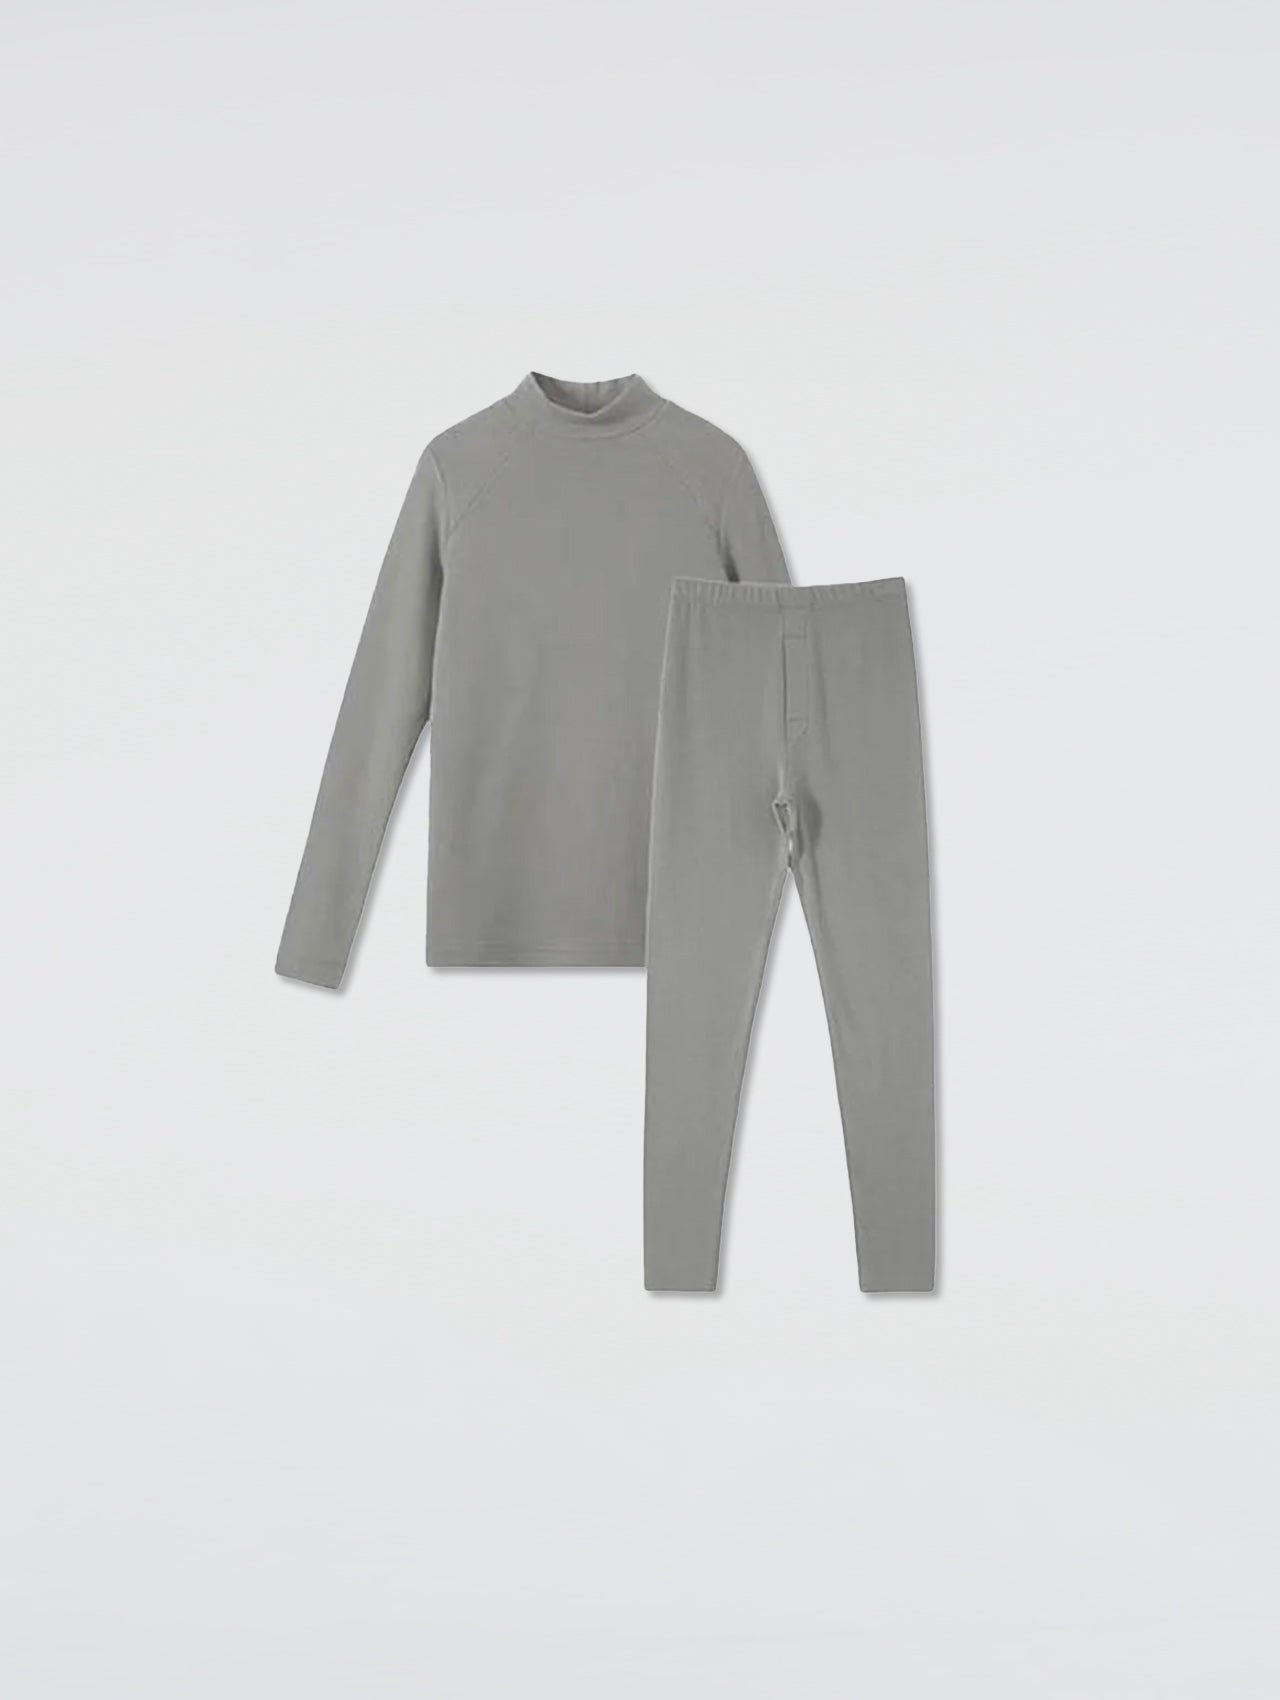 Children Self-Heating Velvet Semi-High Neck Suit